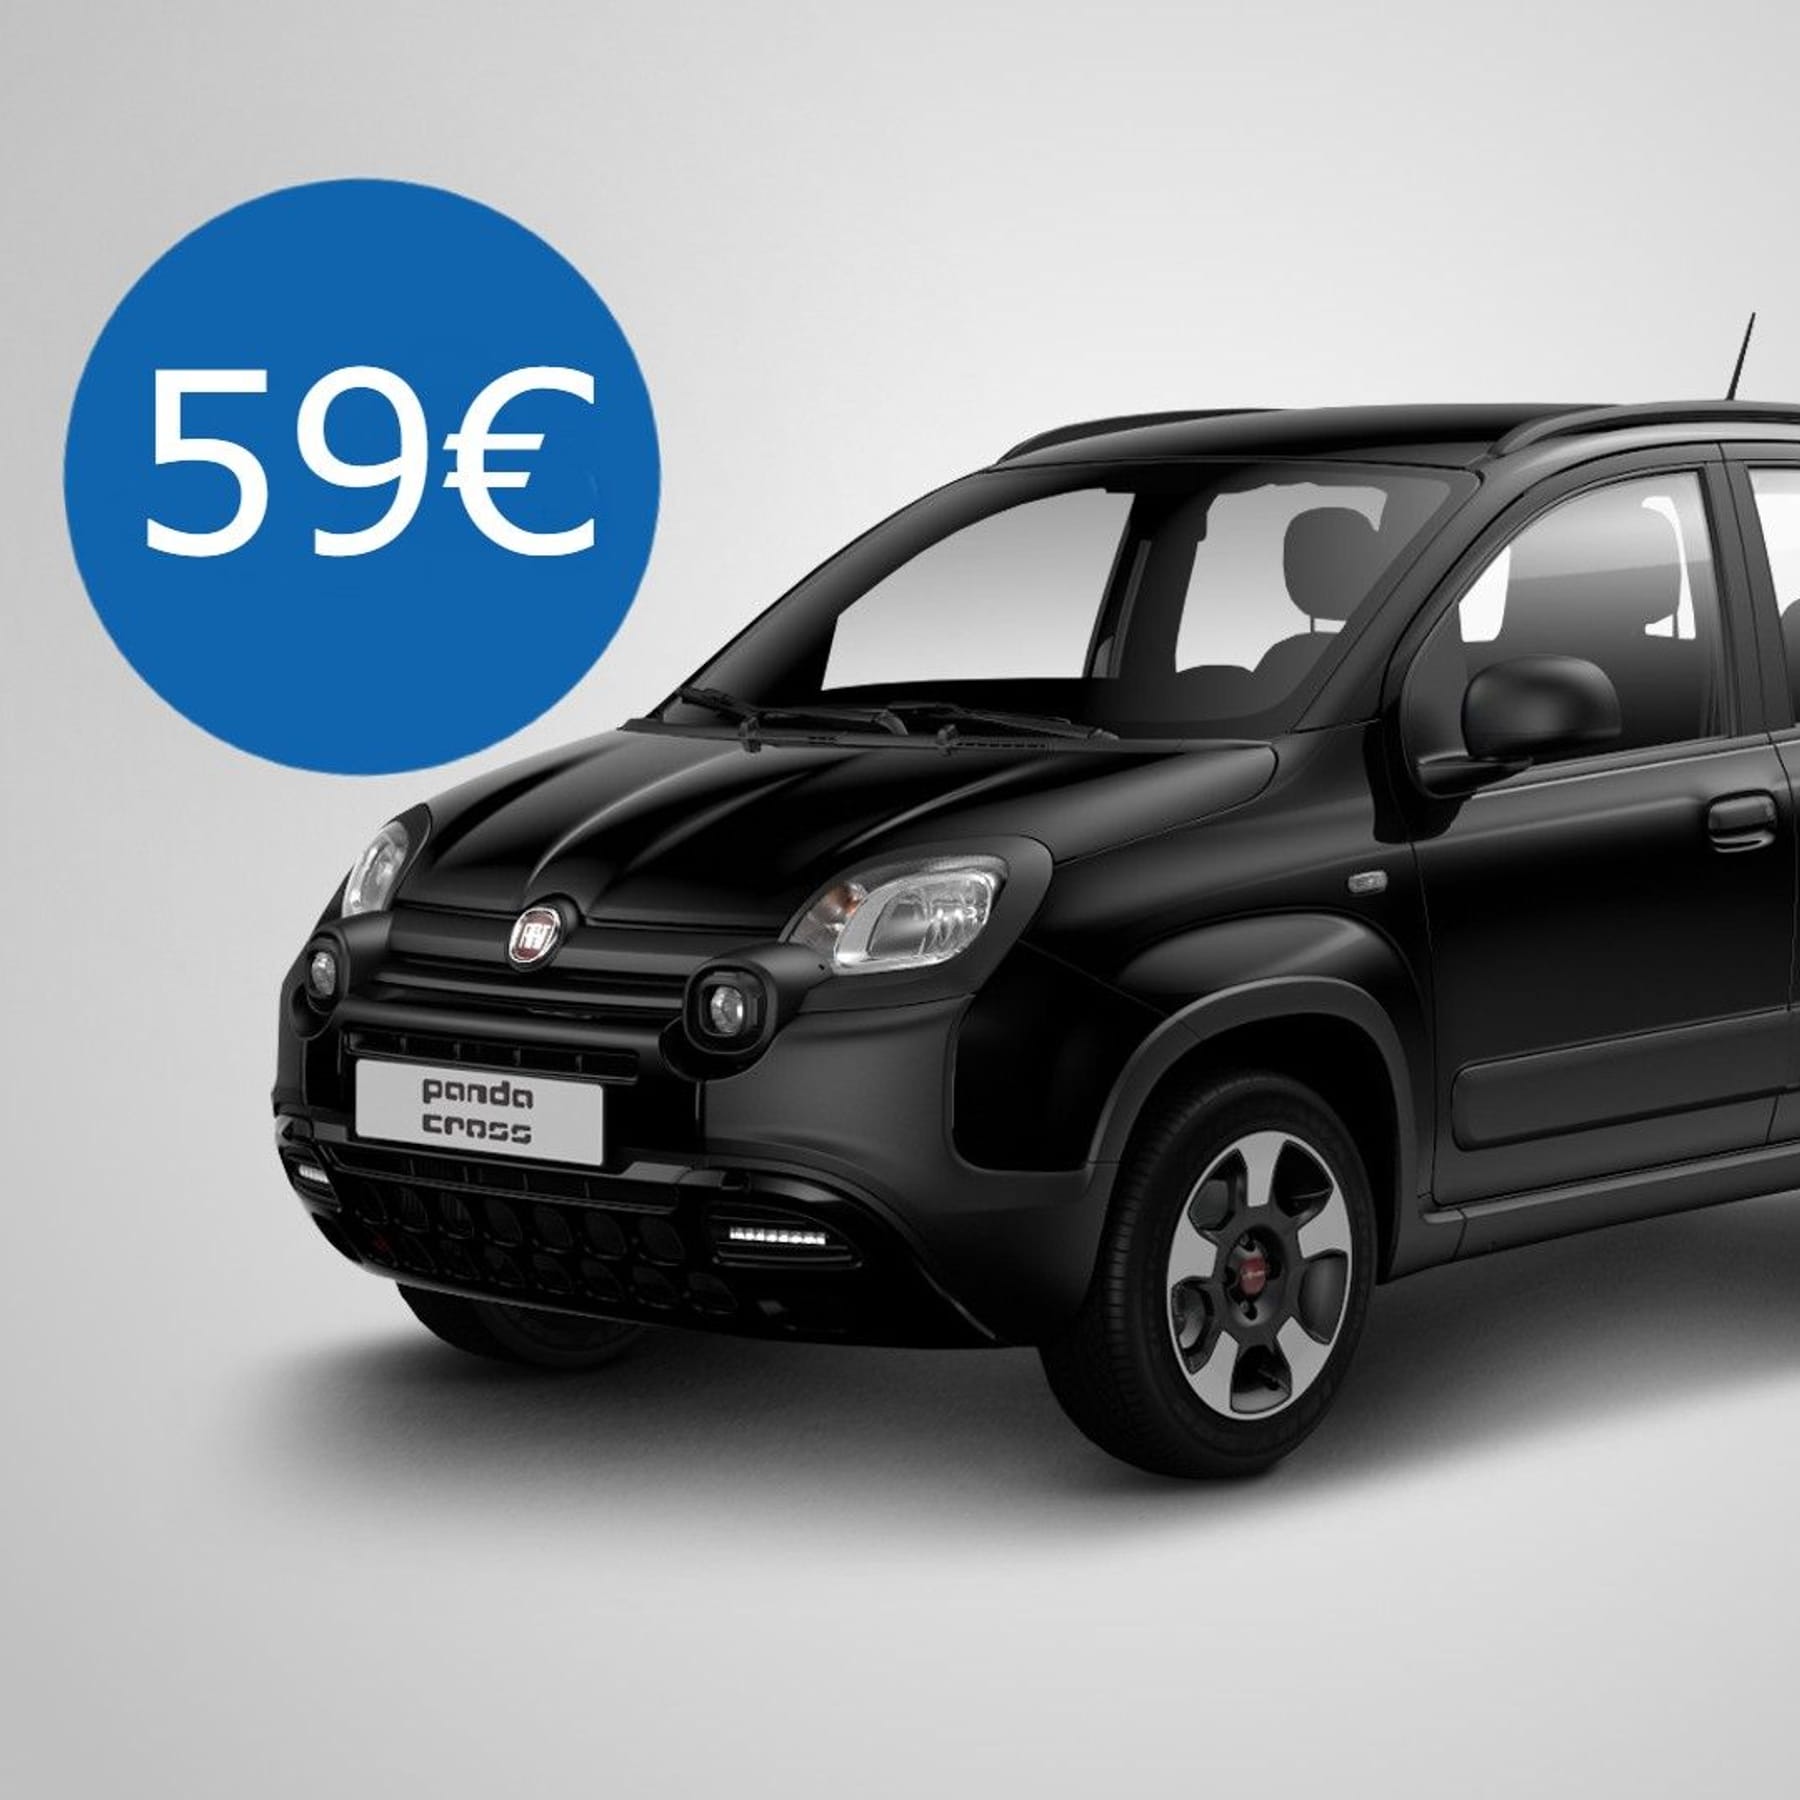 Fiat Panda: Kultiger Kleinwagen für nur 59 Euro im Leasing-Angebot